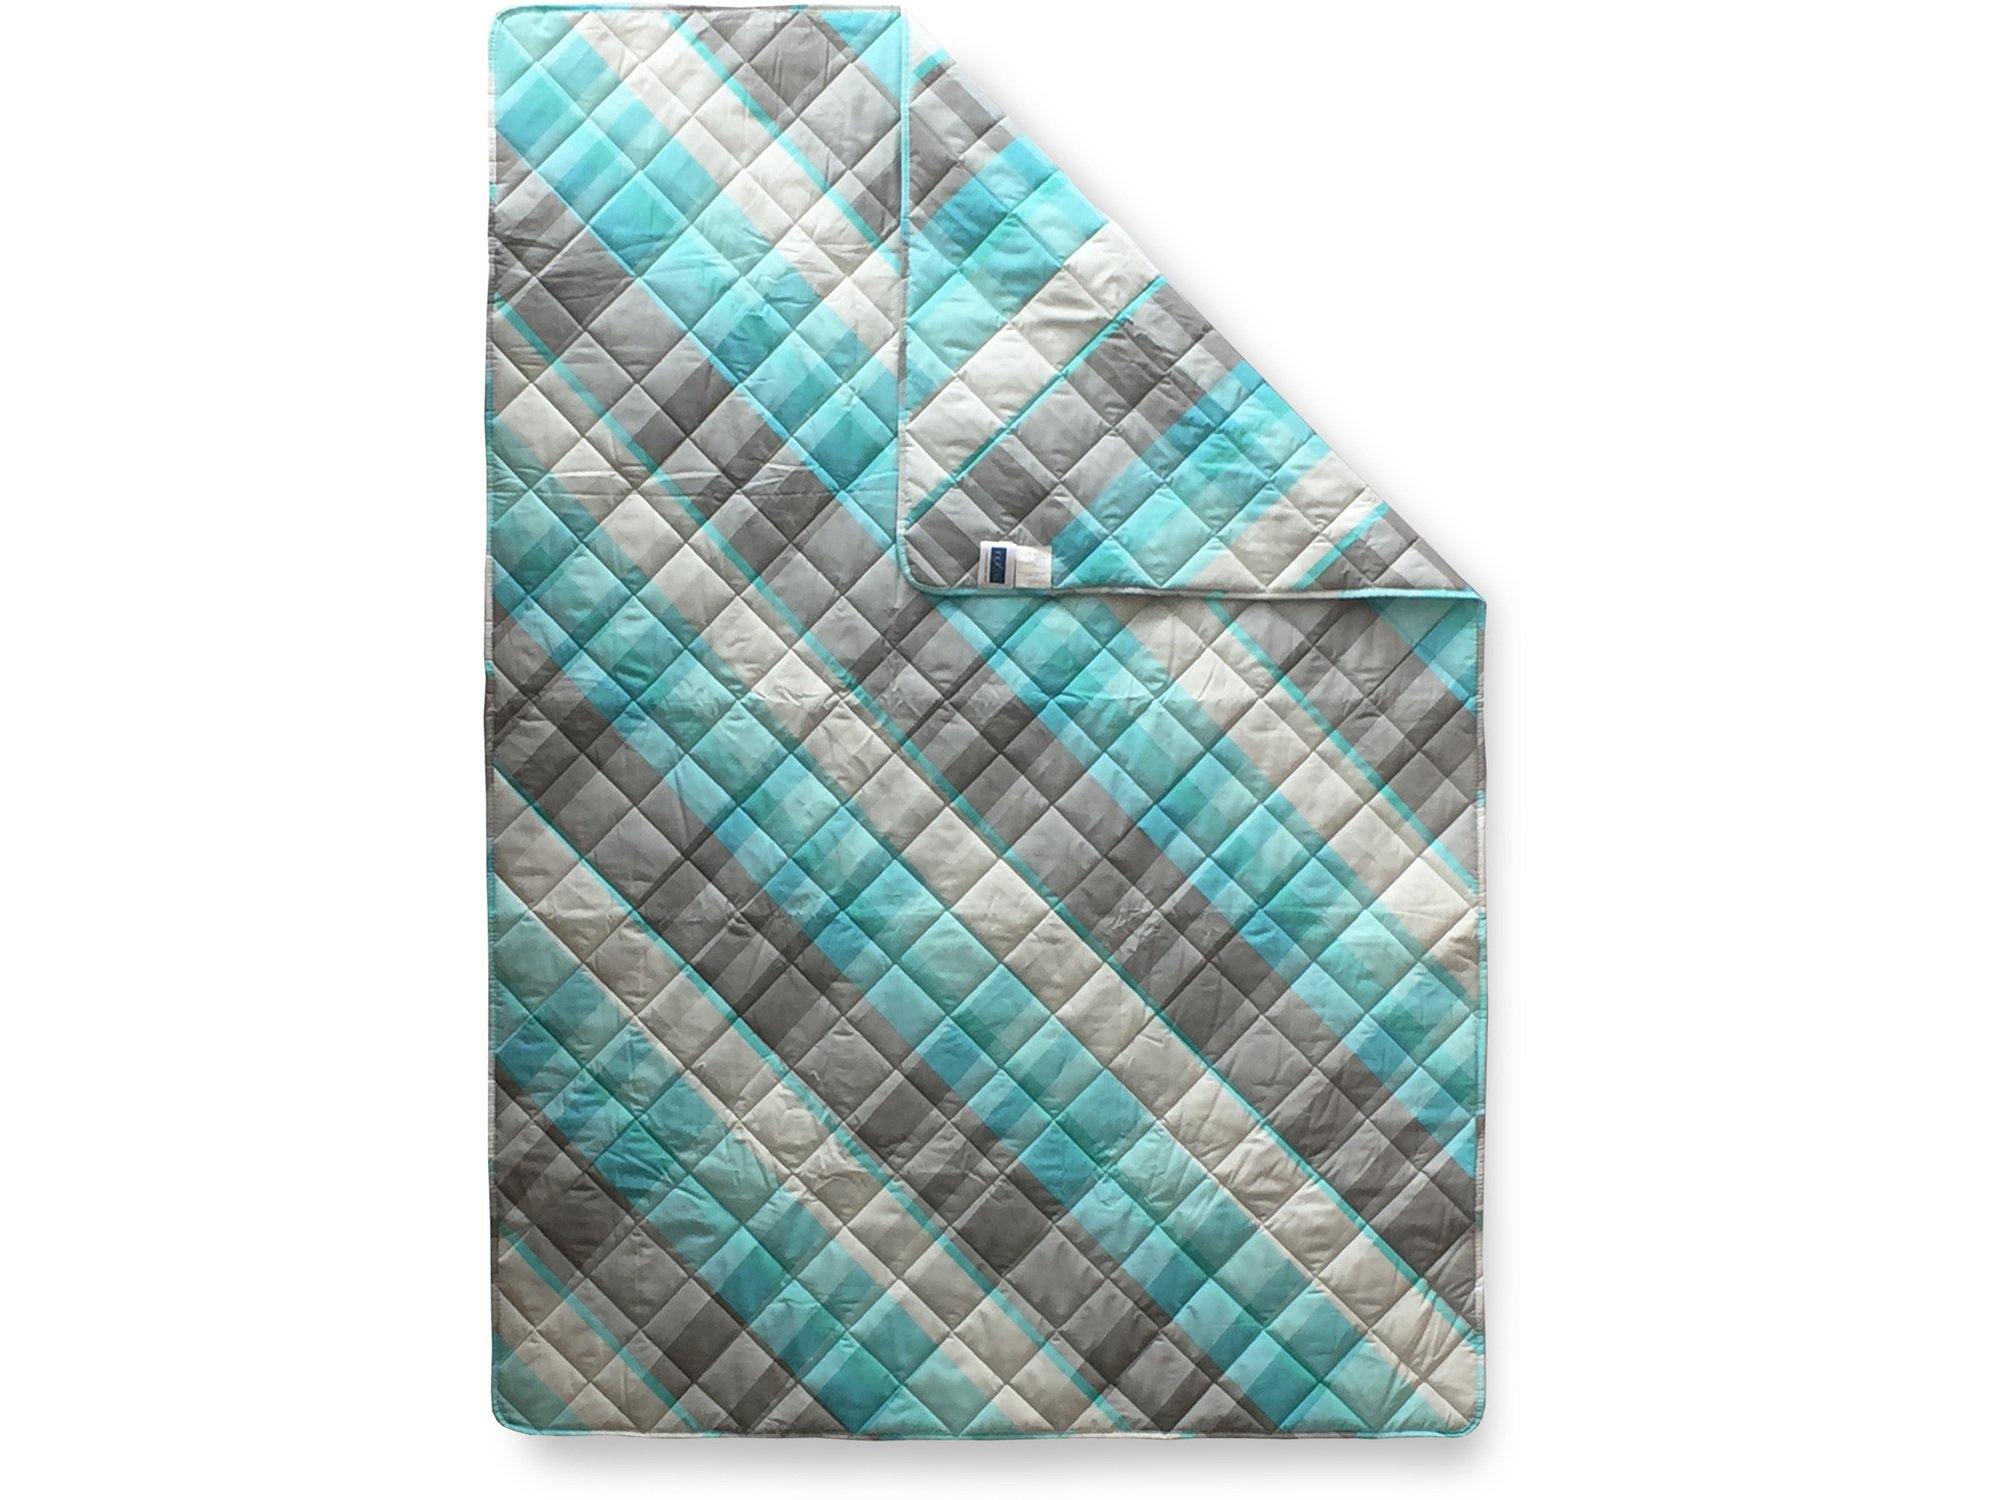 Textil Štep deka Ana 200x200cm Geometrija Mint 4010232